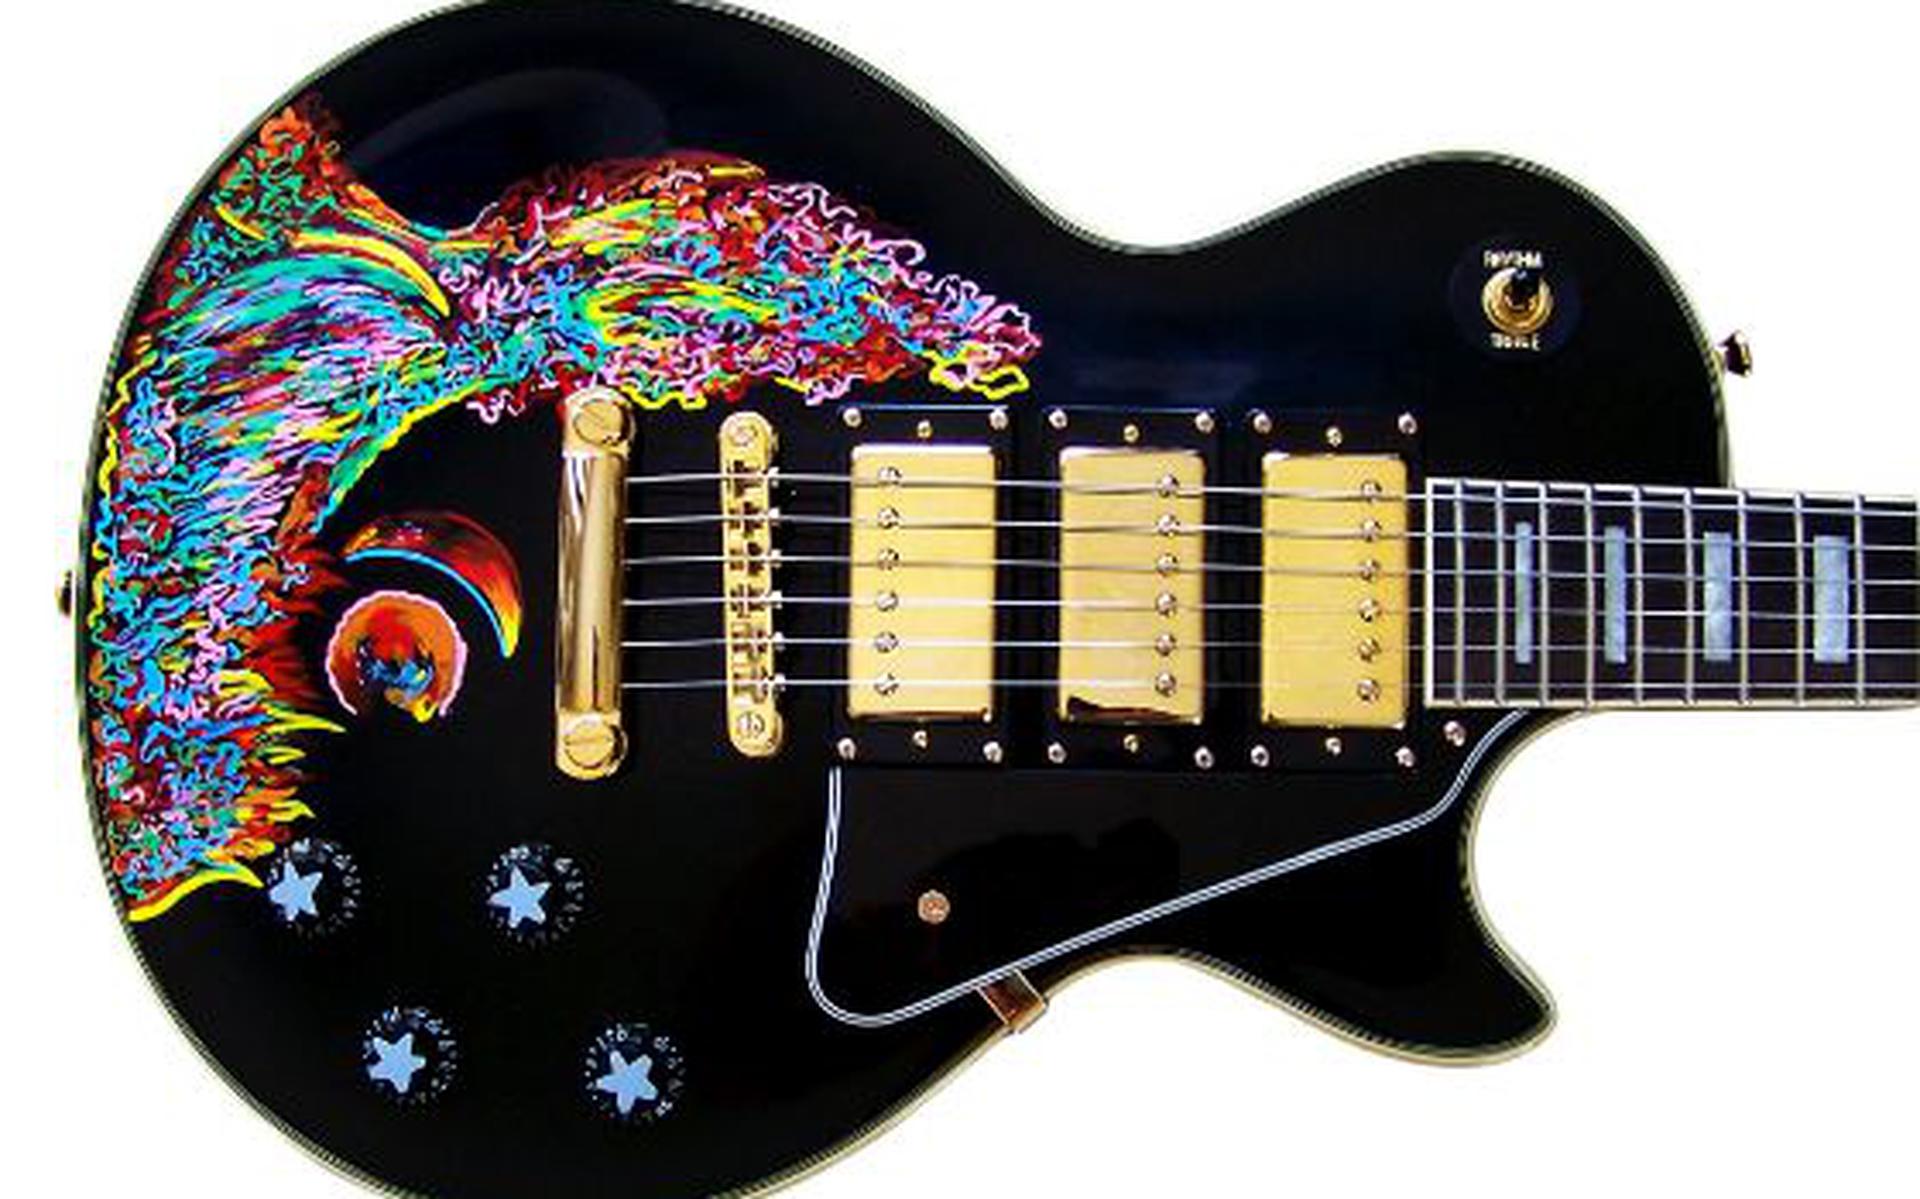 De door Keith Richards beschilderde gitaar.